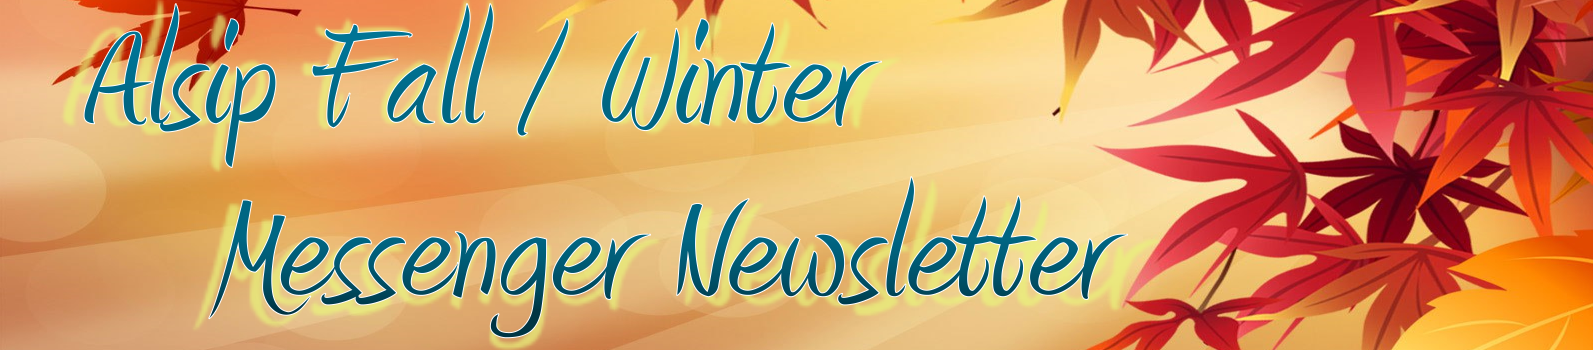 Alsip Fall / Winter Messenger Newsletter